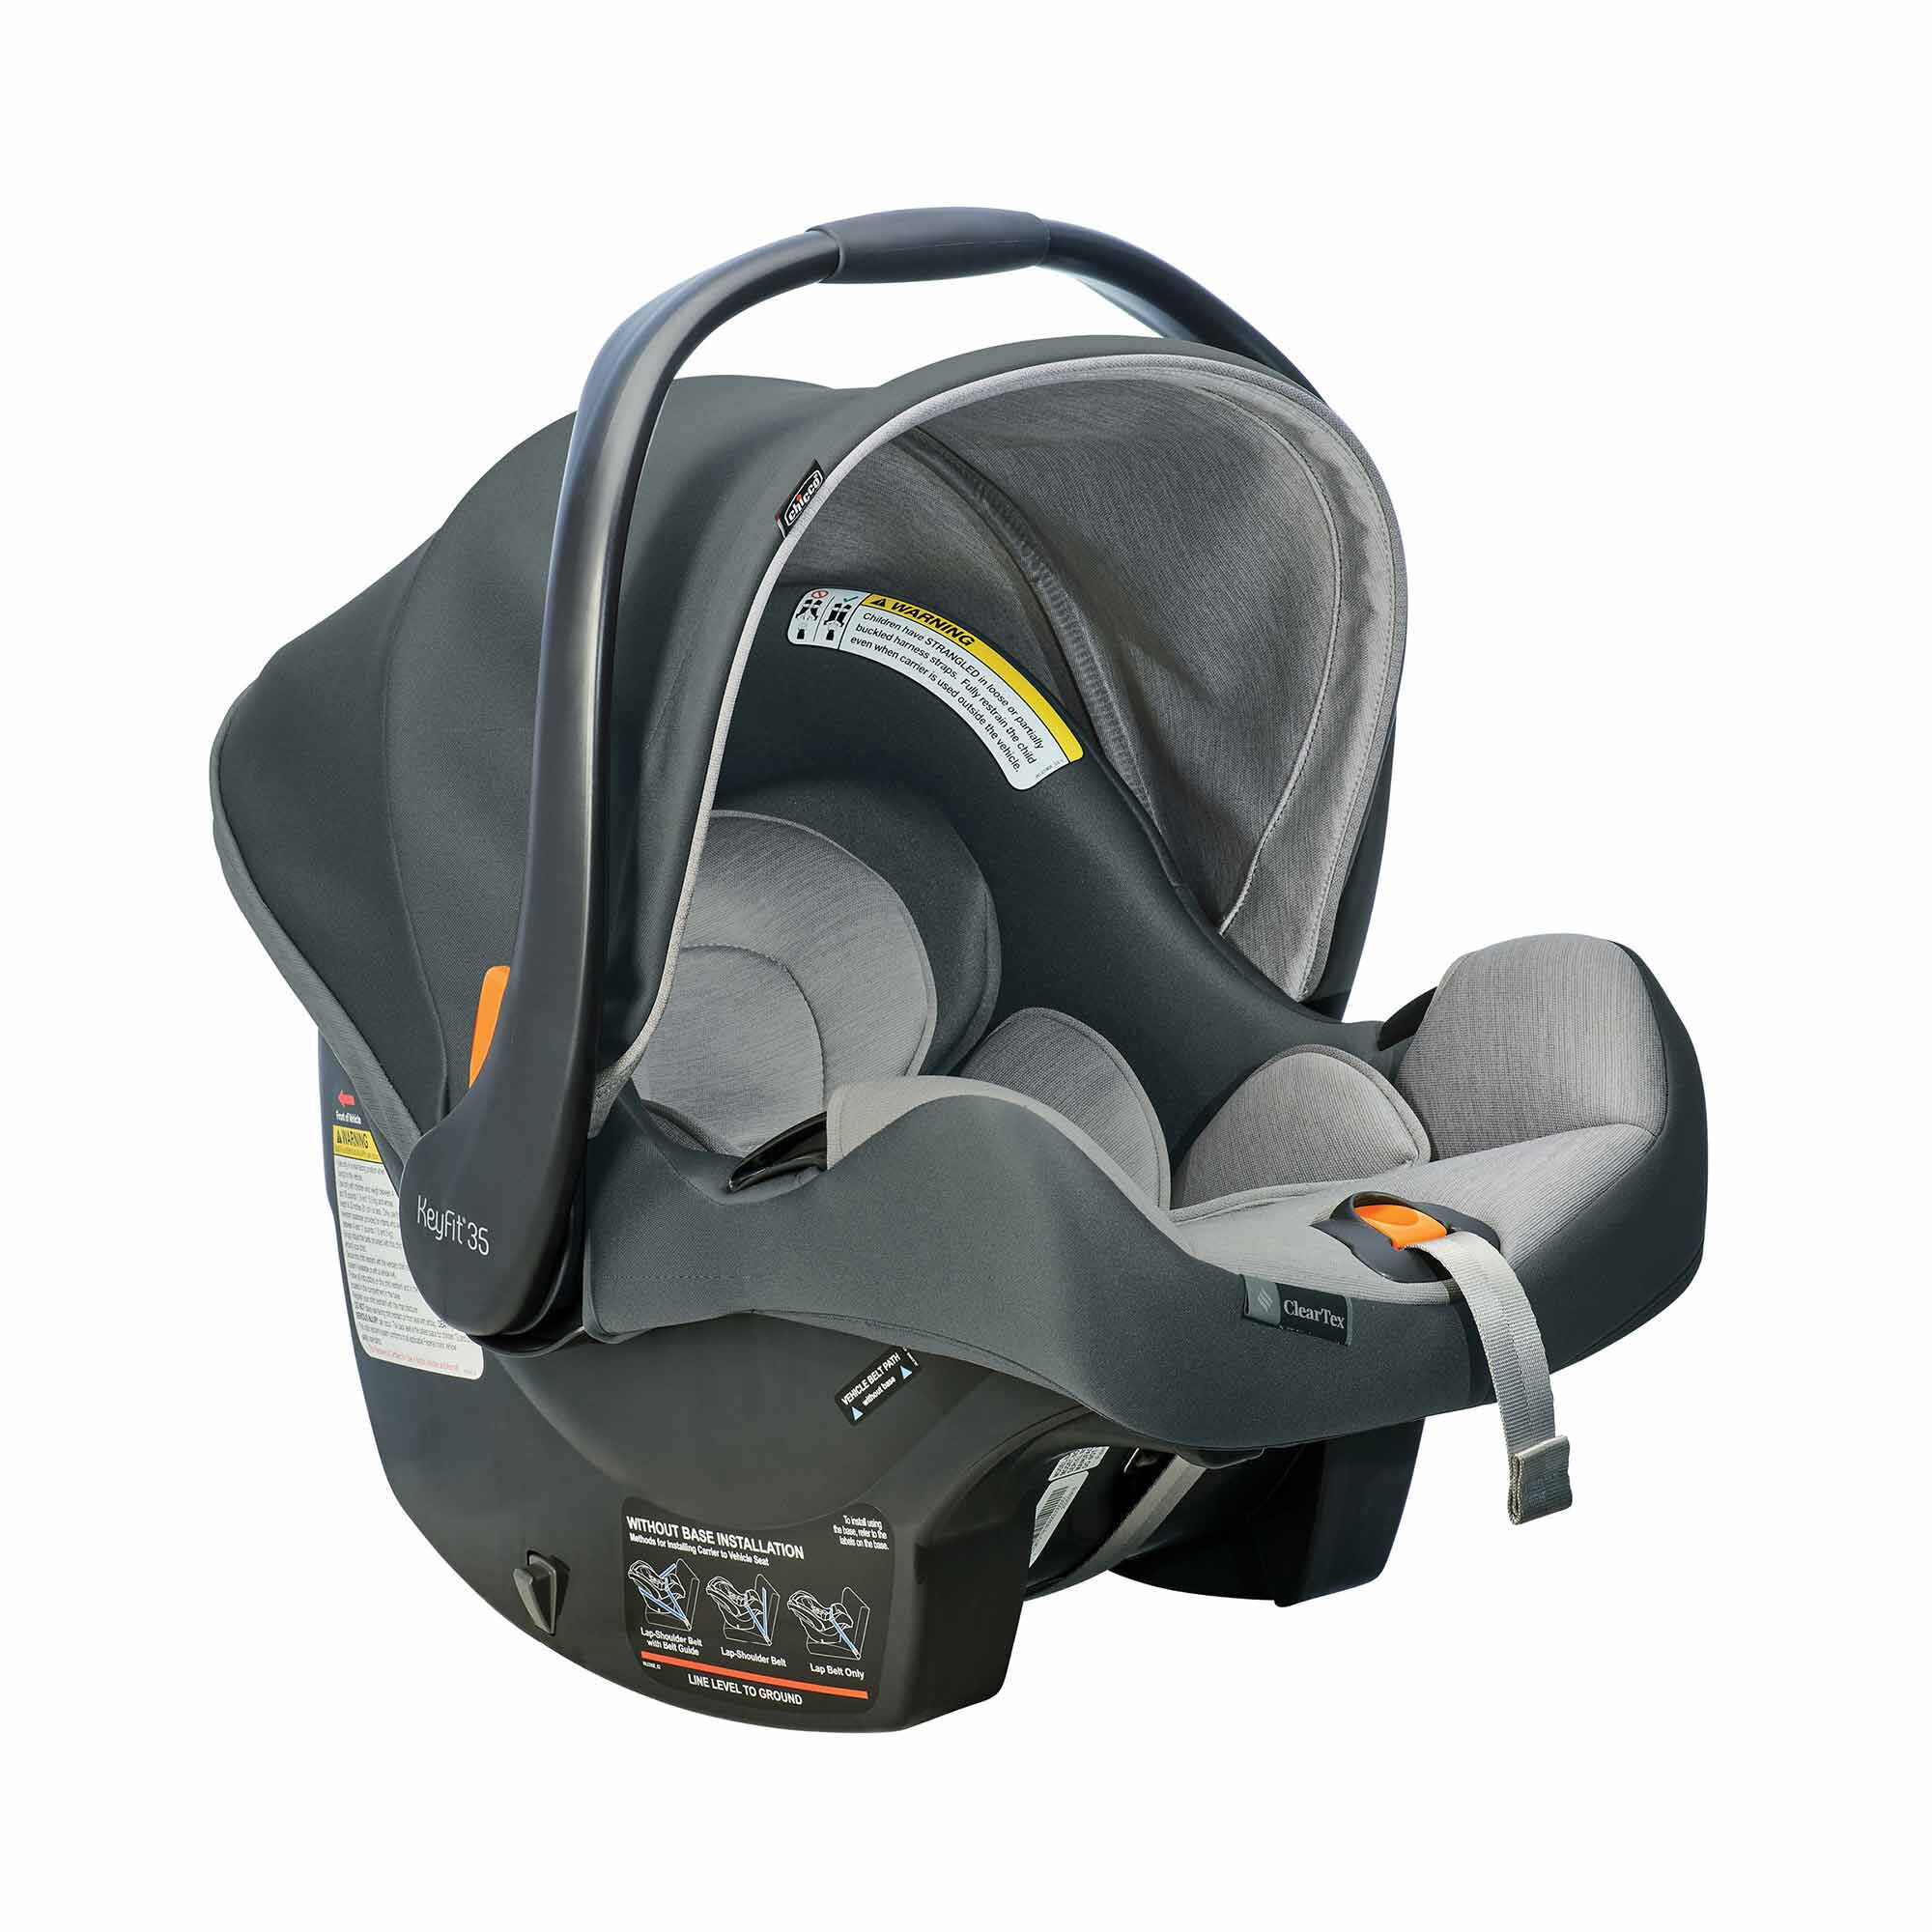 KeyFit 35 Infant Car Seat Base